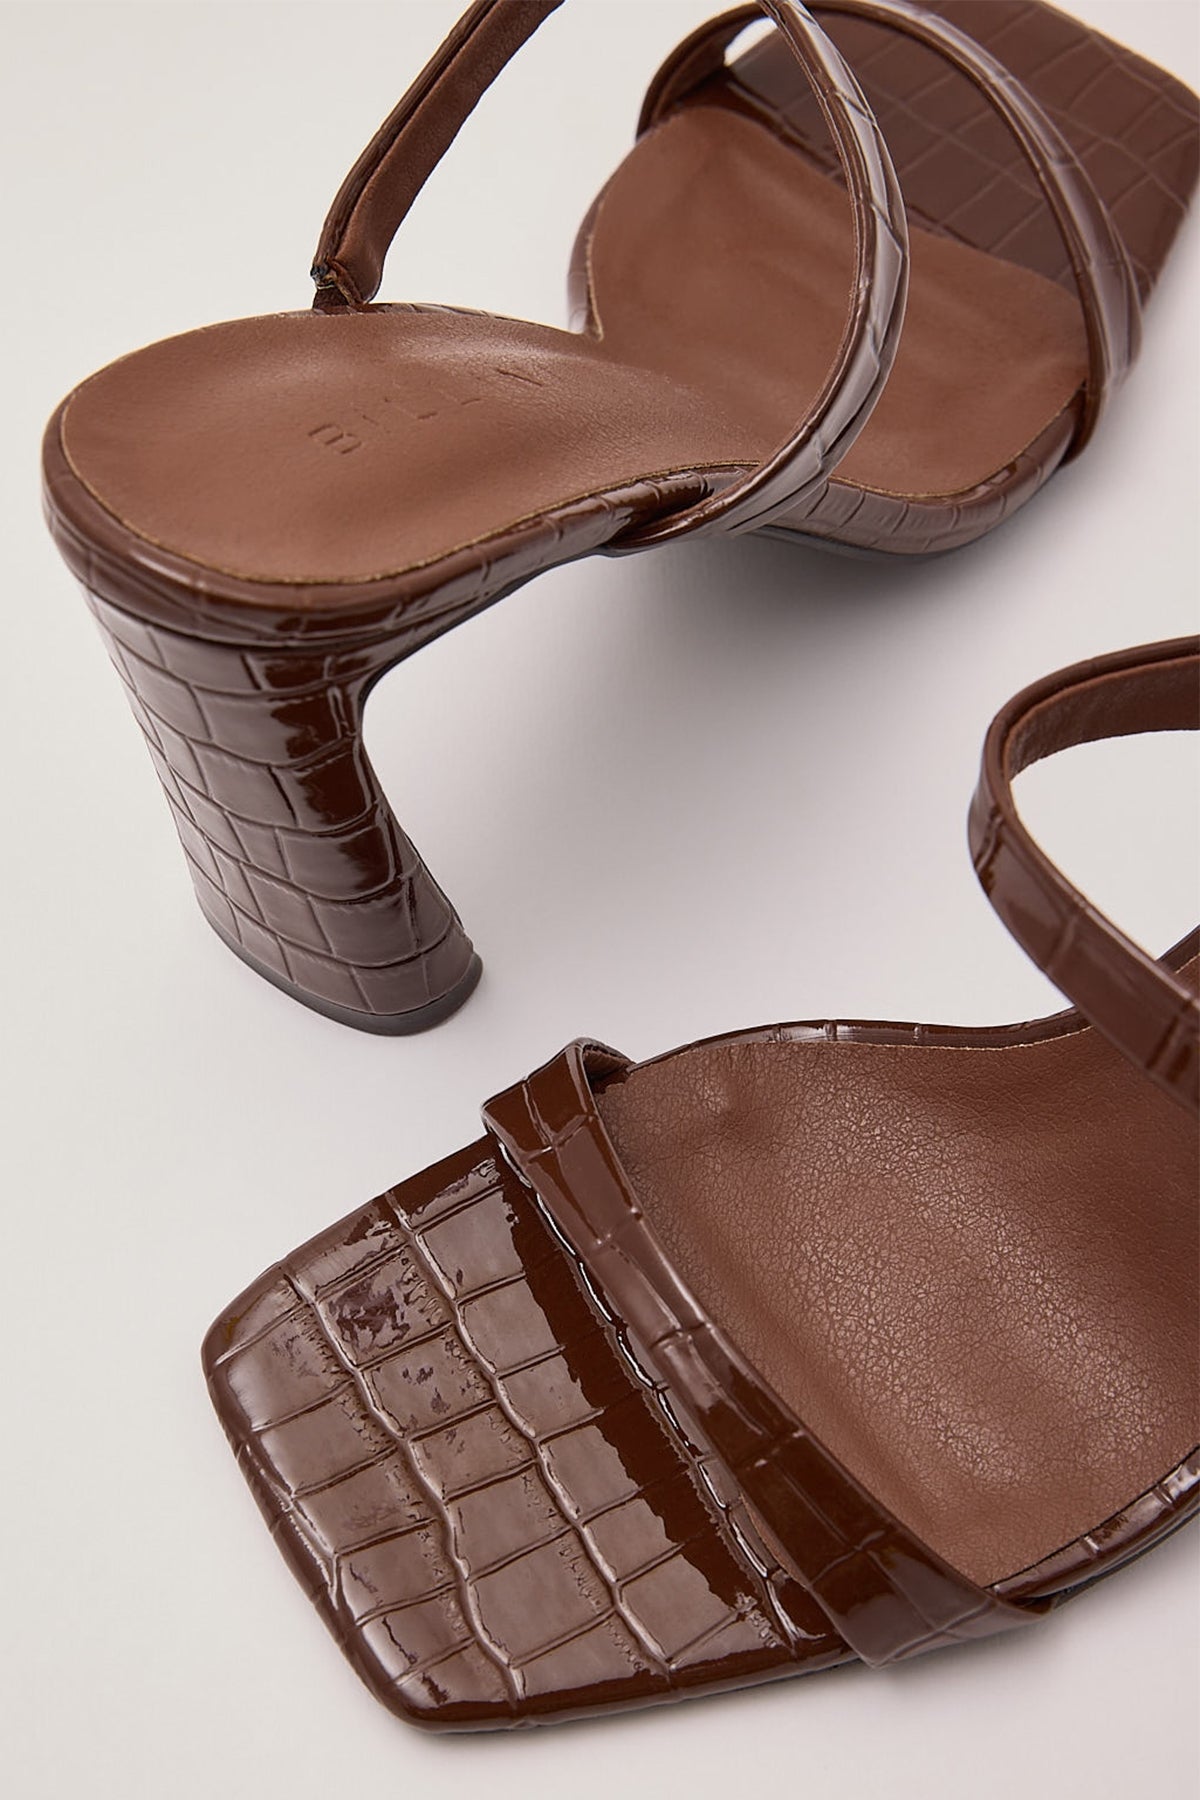 Billini Izalia Heel Chocolate Patent Croc